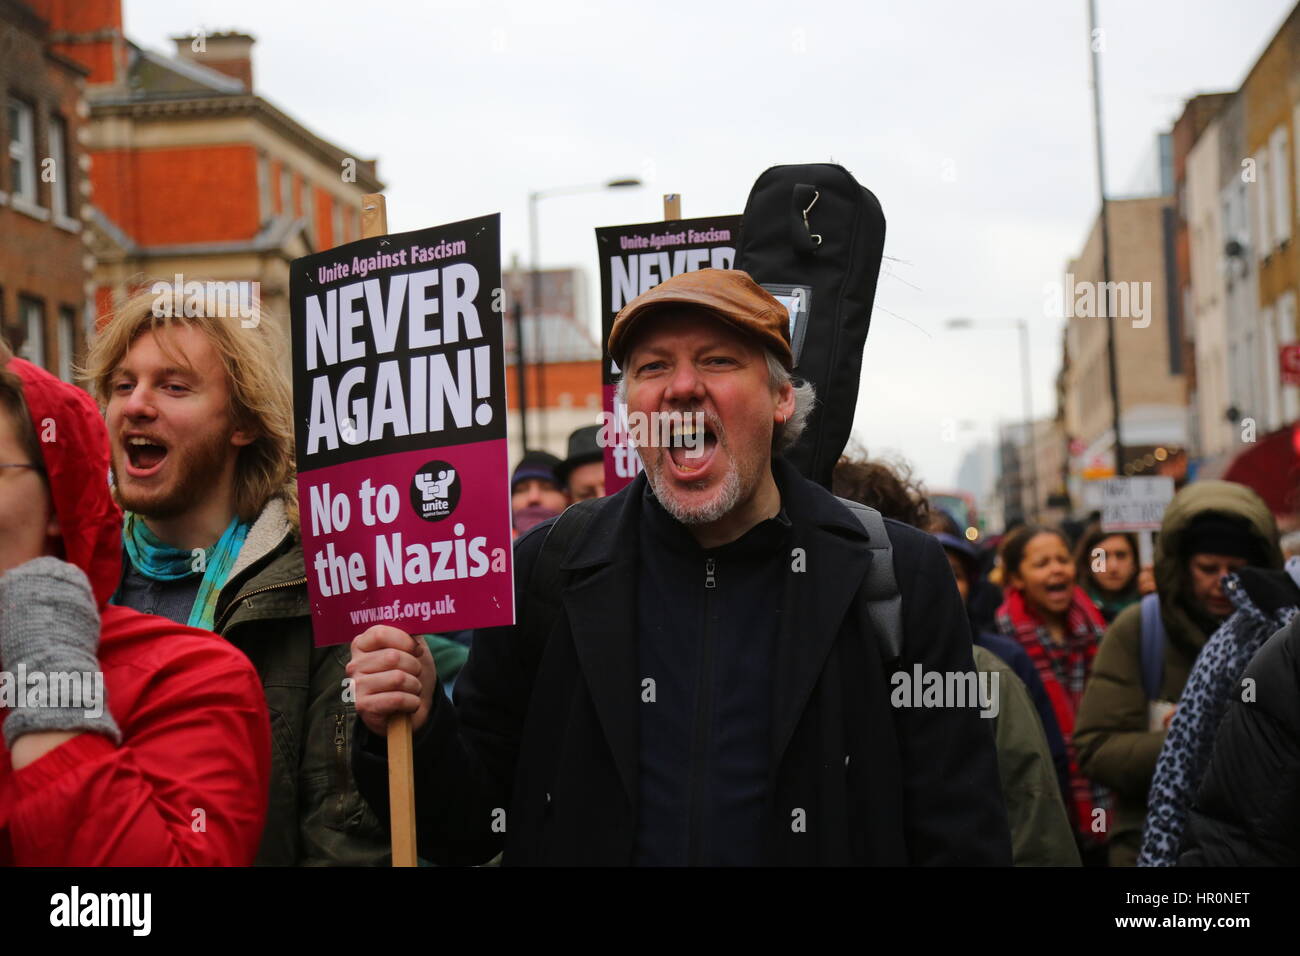 Dalston, Londra, Regno Unito. Il 25 febbraio 2017. Un uomo con mai più cartellone. Una protesta al di fuori dell'LD50 Gallery organizzato da Hackney si alza per il razzismo e il fascismo e unirsi contro il fascismo. Gli artisti e gli attivisti stanno protestando per chiedere la chiusura di LD50, in Dalston, East London, dopo le accuse la galleria ha fornito una piattaforma di anti-immigrati, Islamophobic e "alt-destra" figure e promosso "odio non discorso libero". Penelope Barritt/Alamy Live News Foto Stock